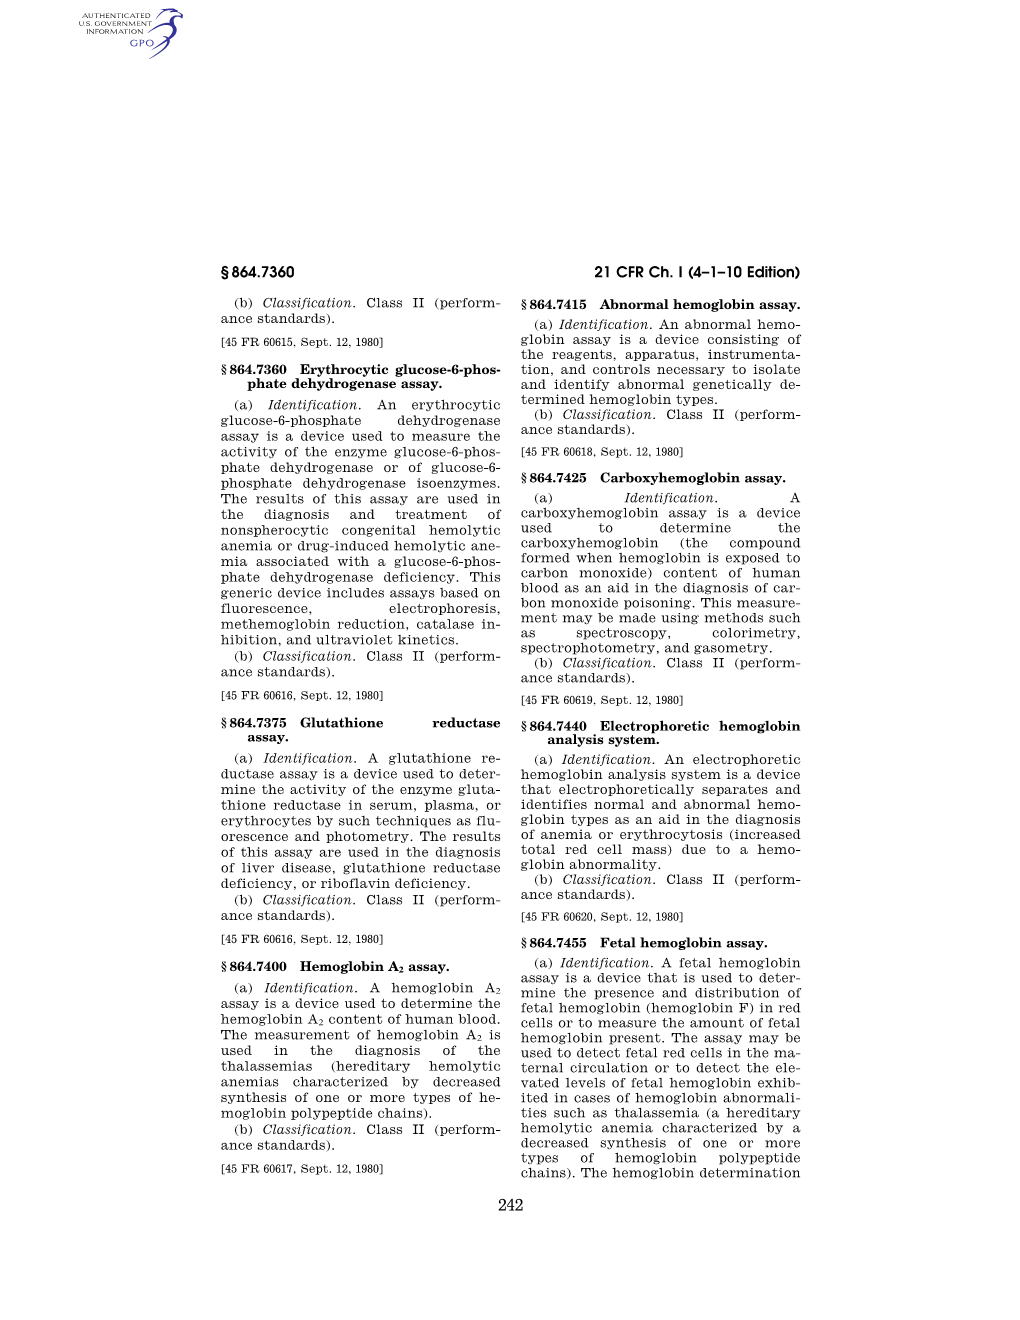 21 CFR Ch. I (4–1–10 Edition) § 864.7360